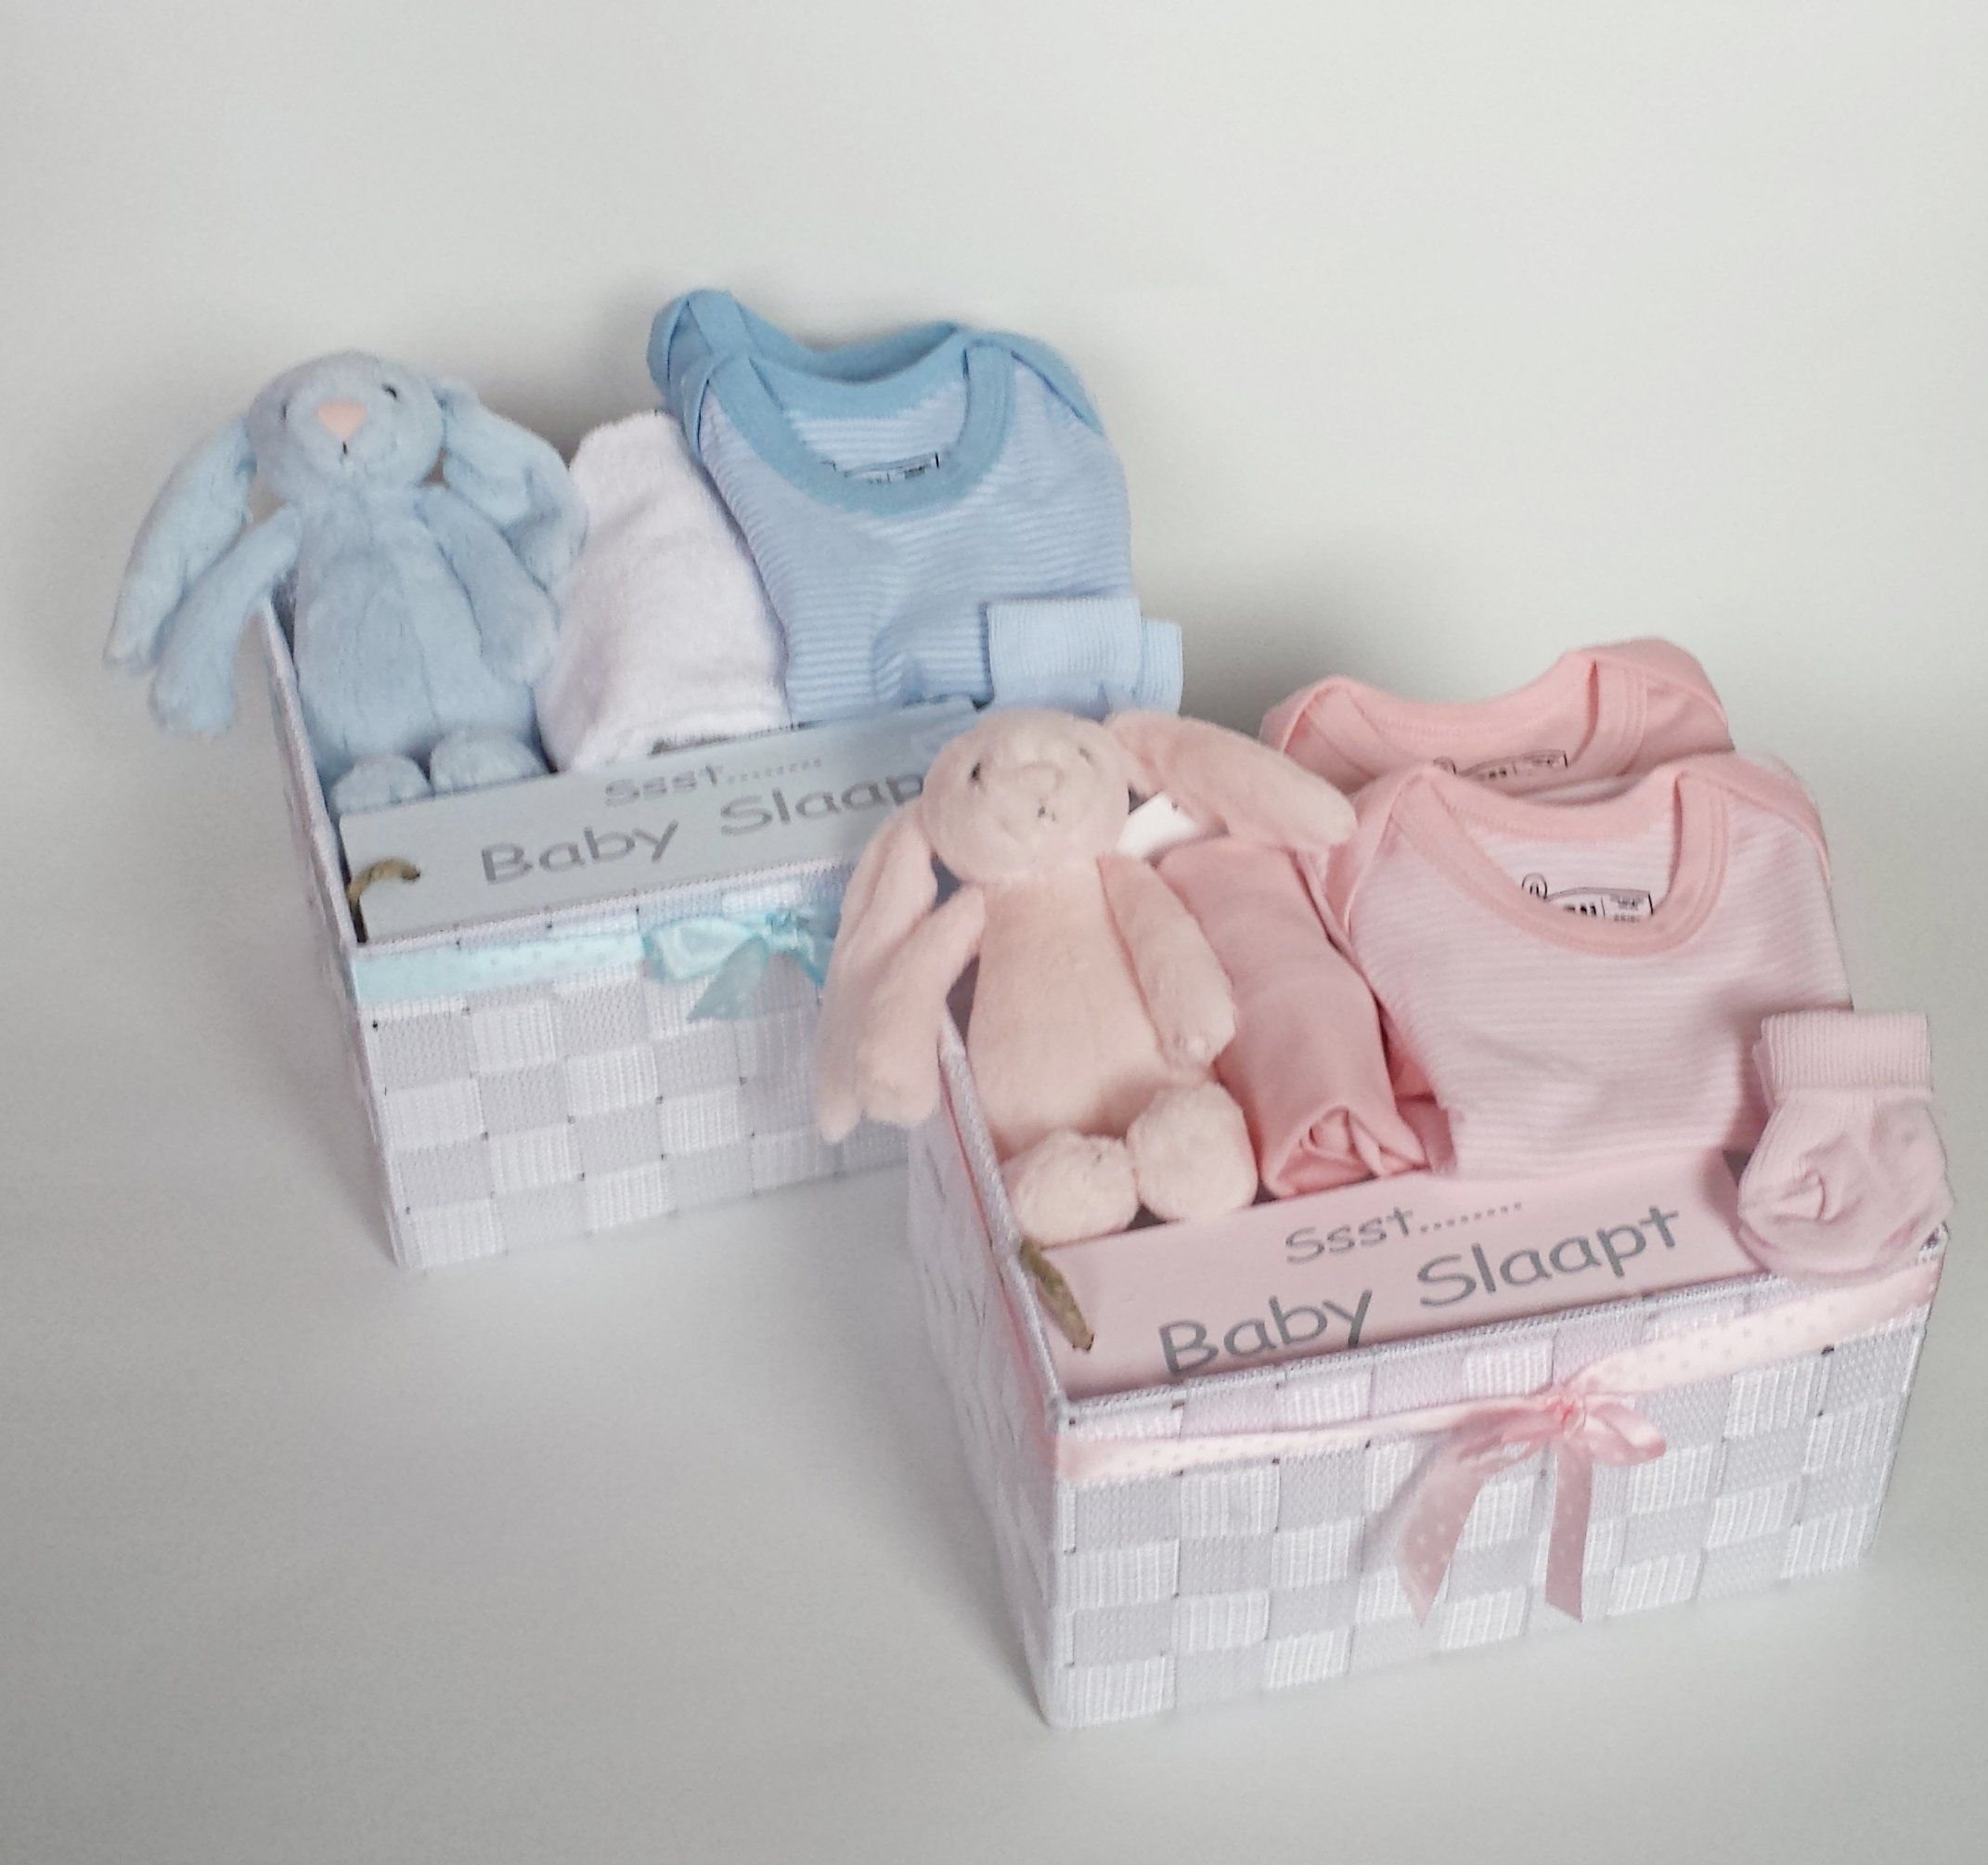 Подарочный комплект для новорожденного. Подарочный набор одежды для новорожденного. Набор для новорожденного в подарок. Подарочный набор одежды для новорожденной девочки.